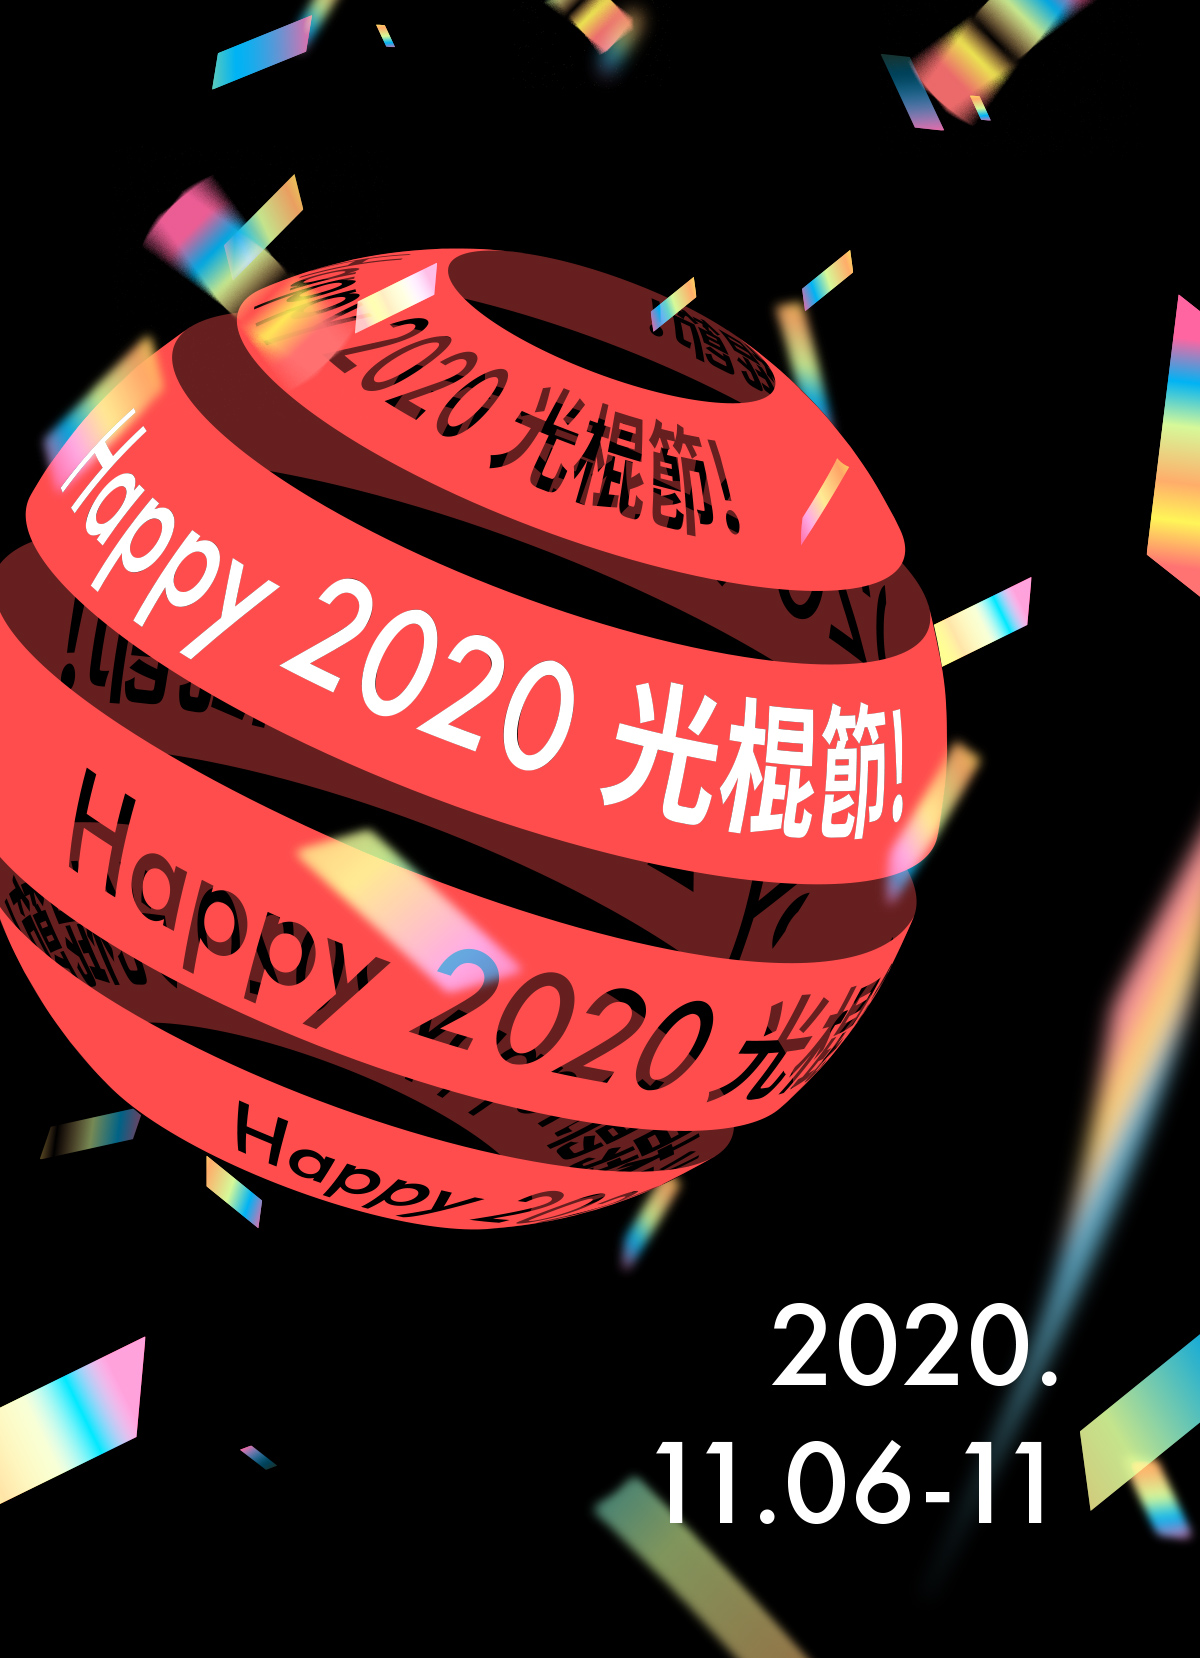 Welcome to 2020 光棍節! 均一價~折抵111元♥